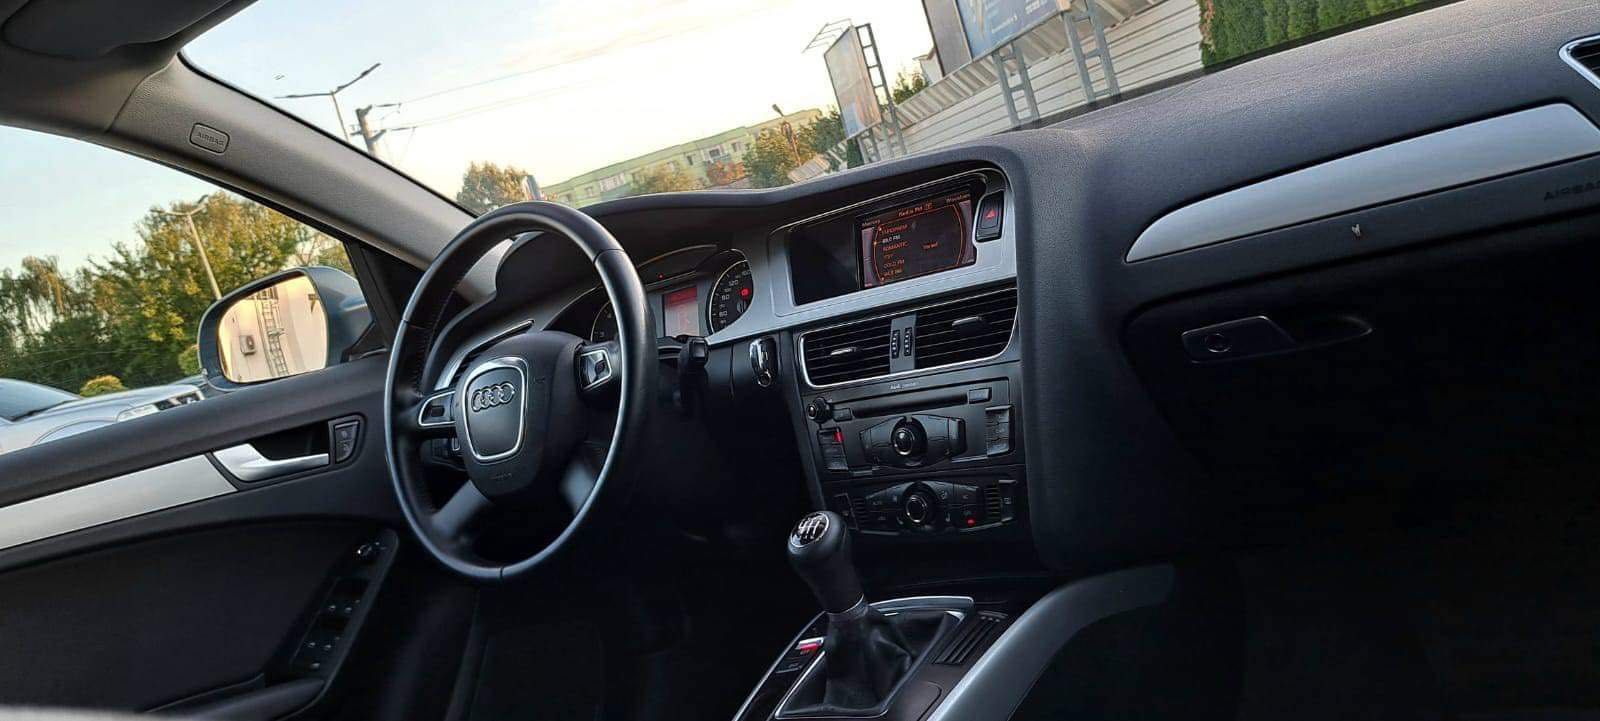 Audi A4 2010, 1.8 TFSI 180 PS